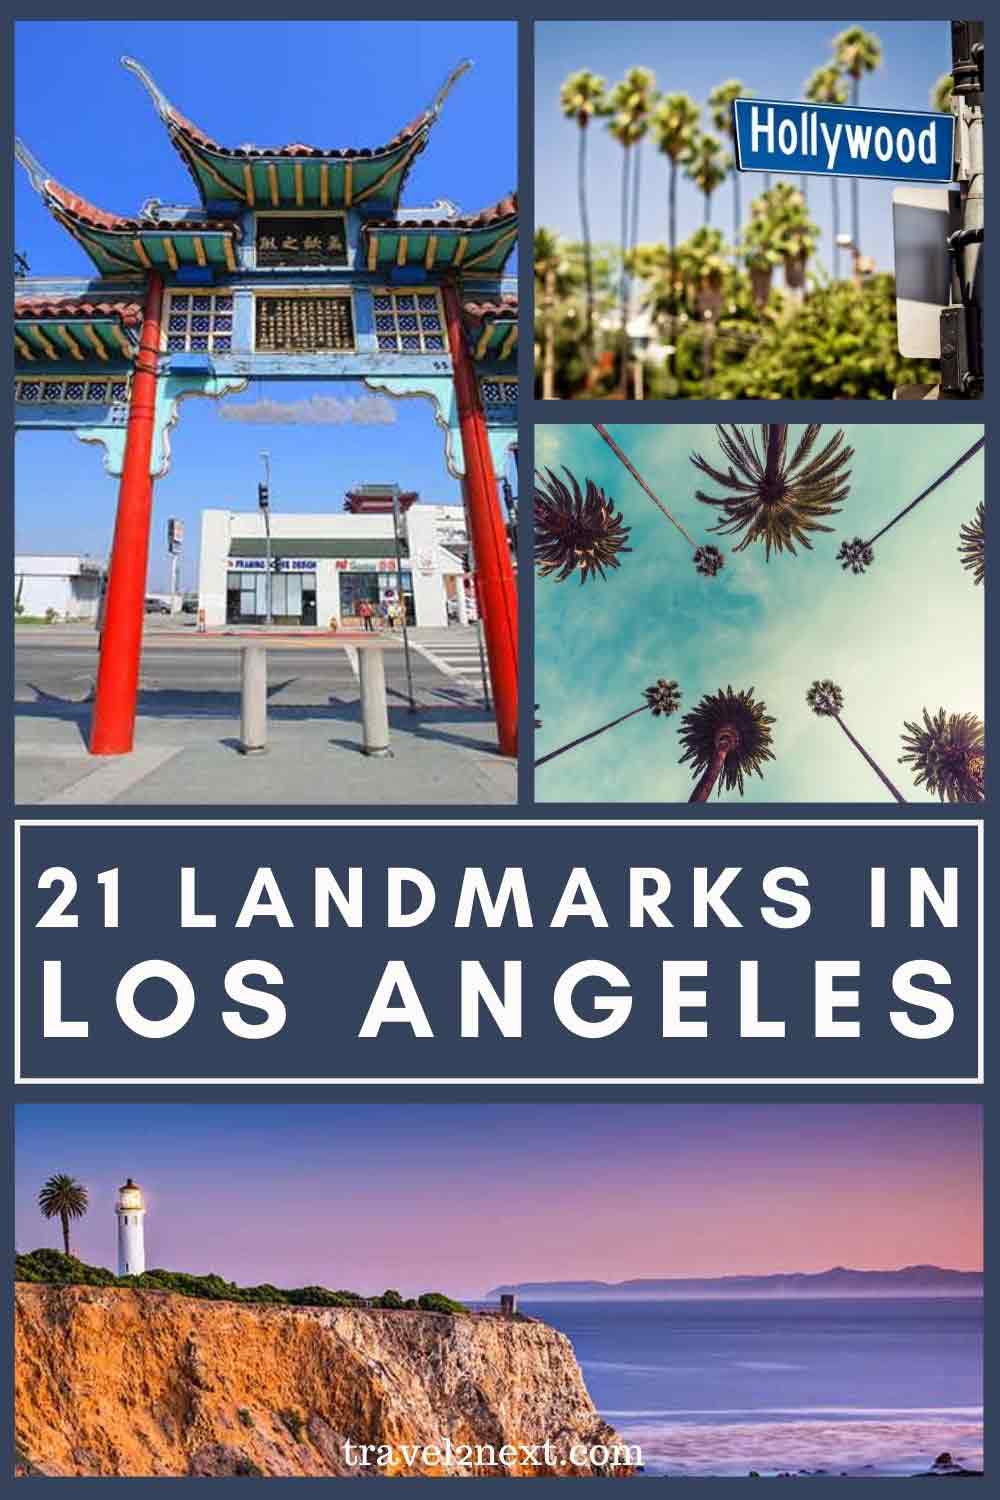 23 Los Angeles Landmarks